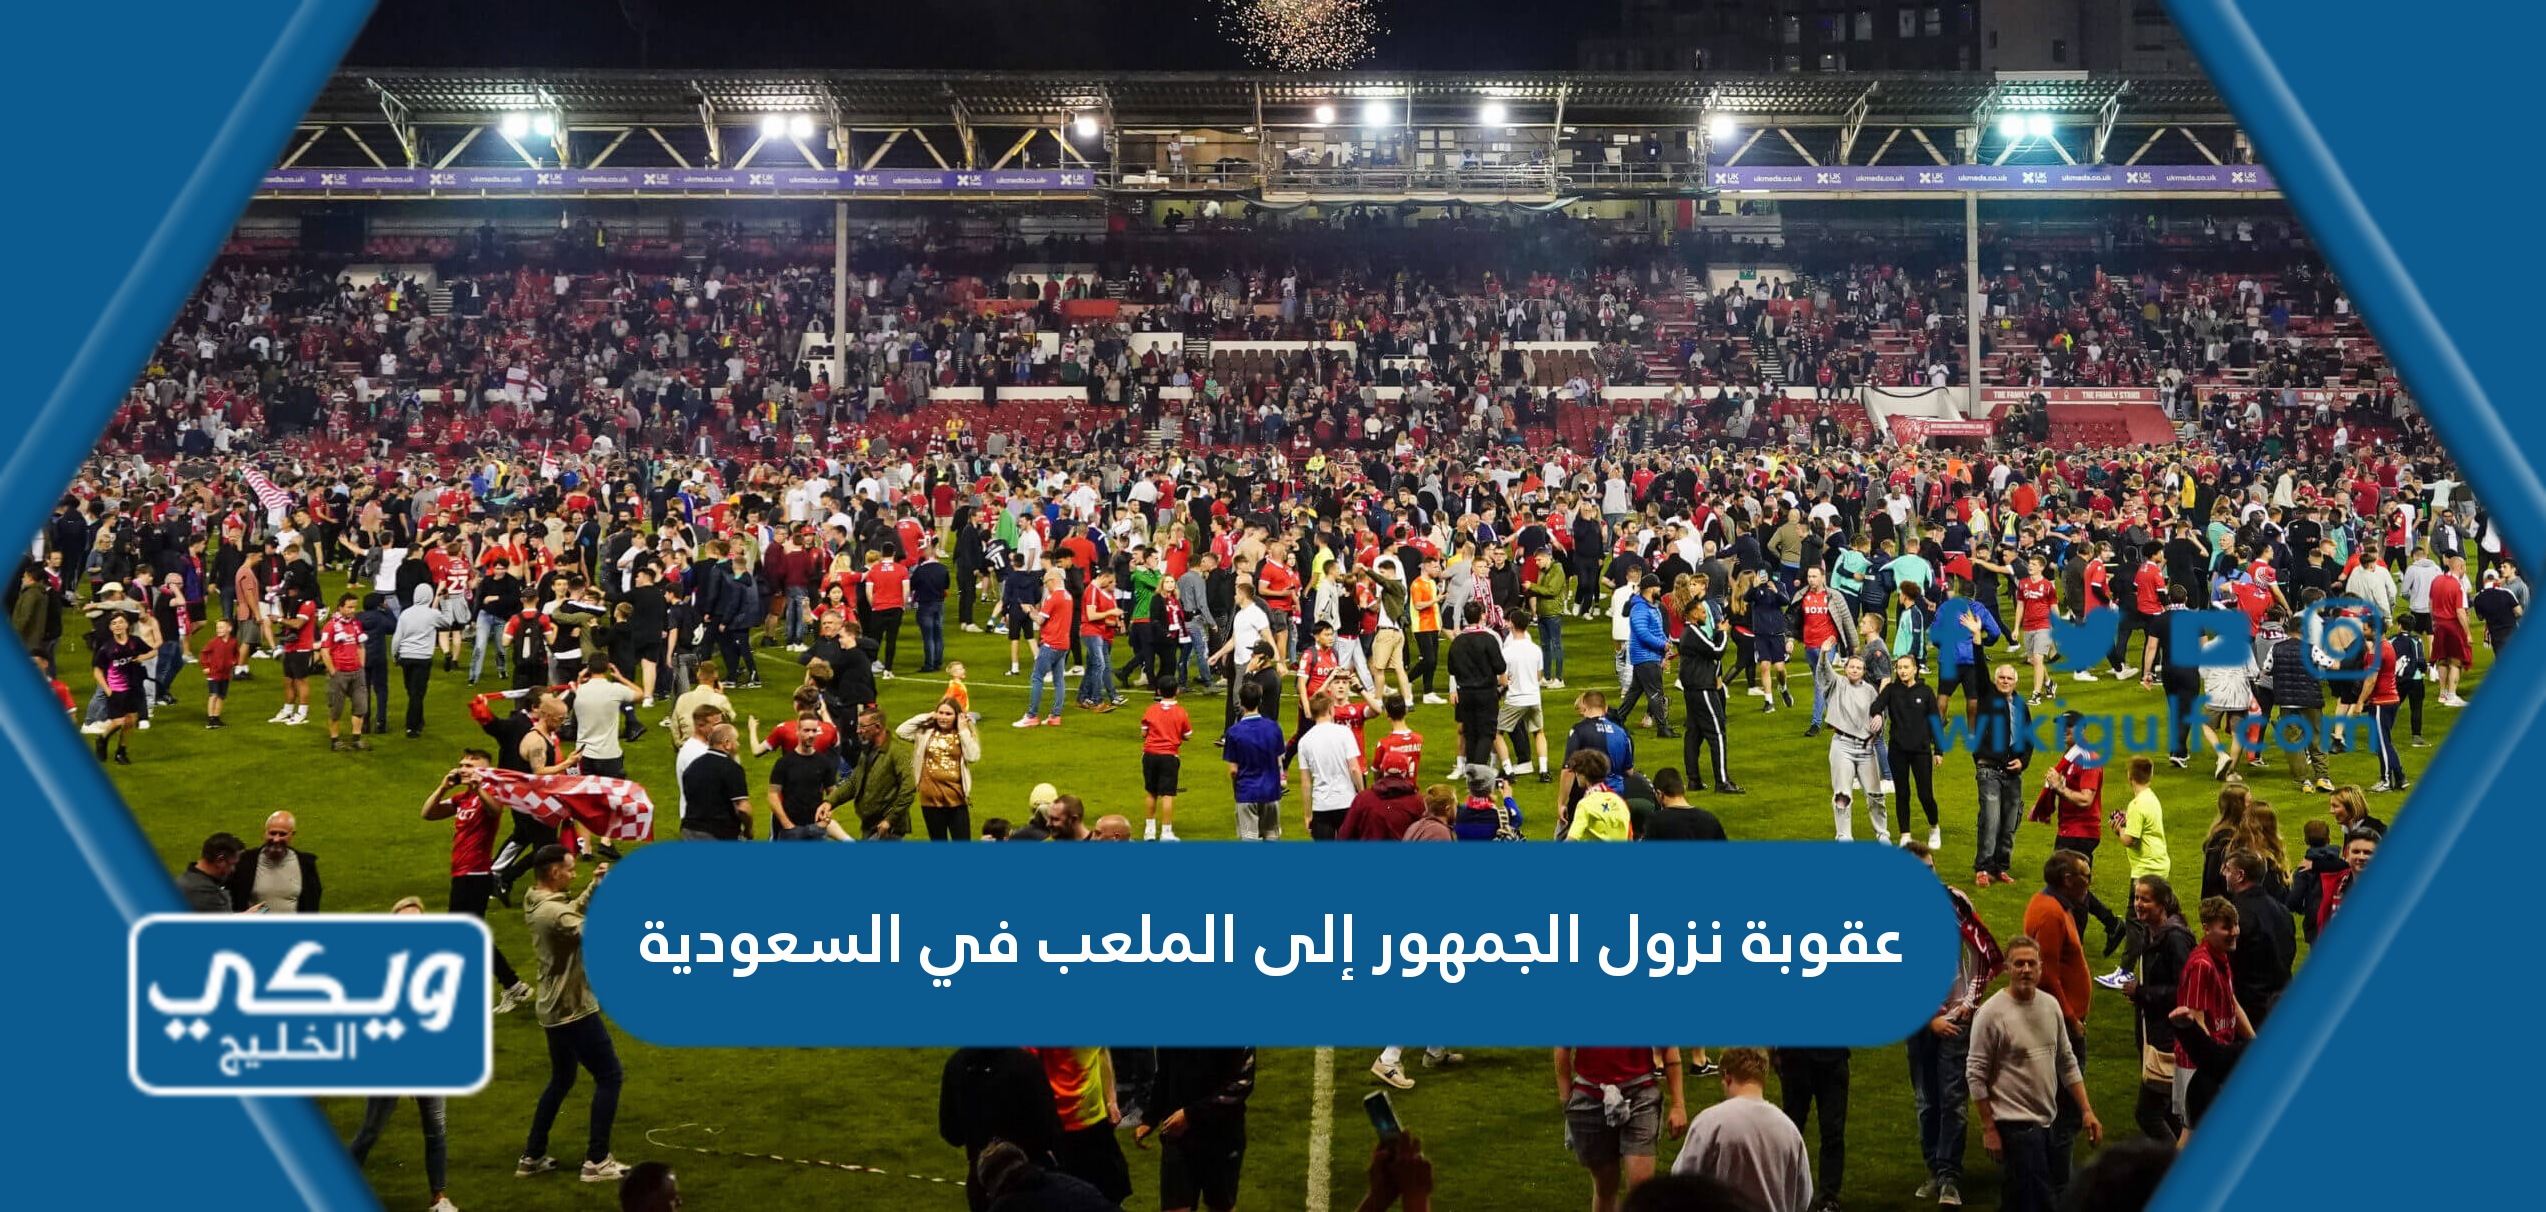 ماهي عقوبة نزول الجمهور إلى الملعب في السعودية